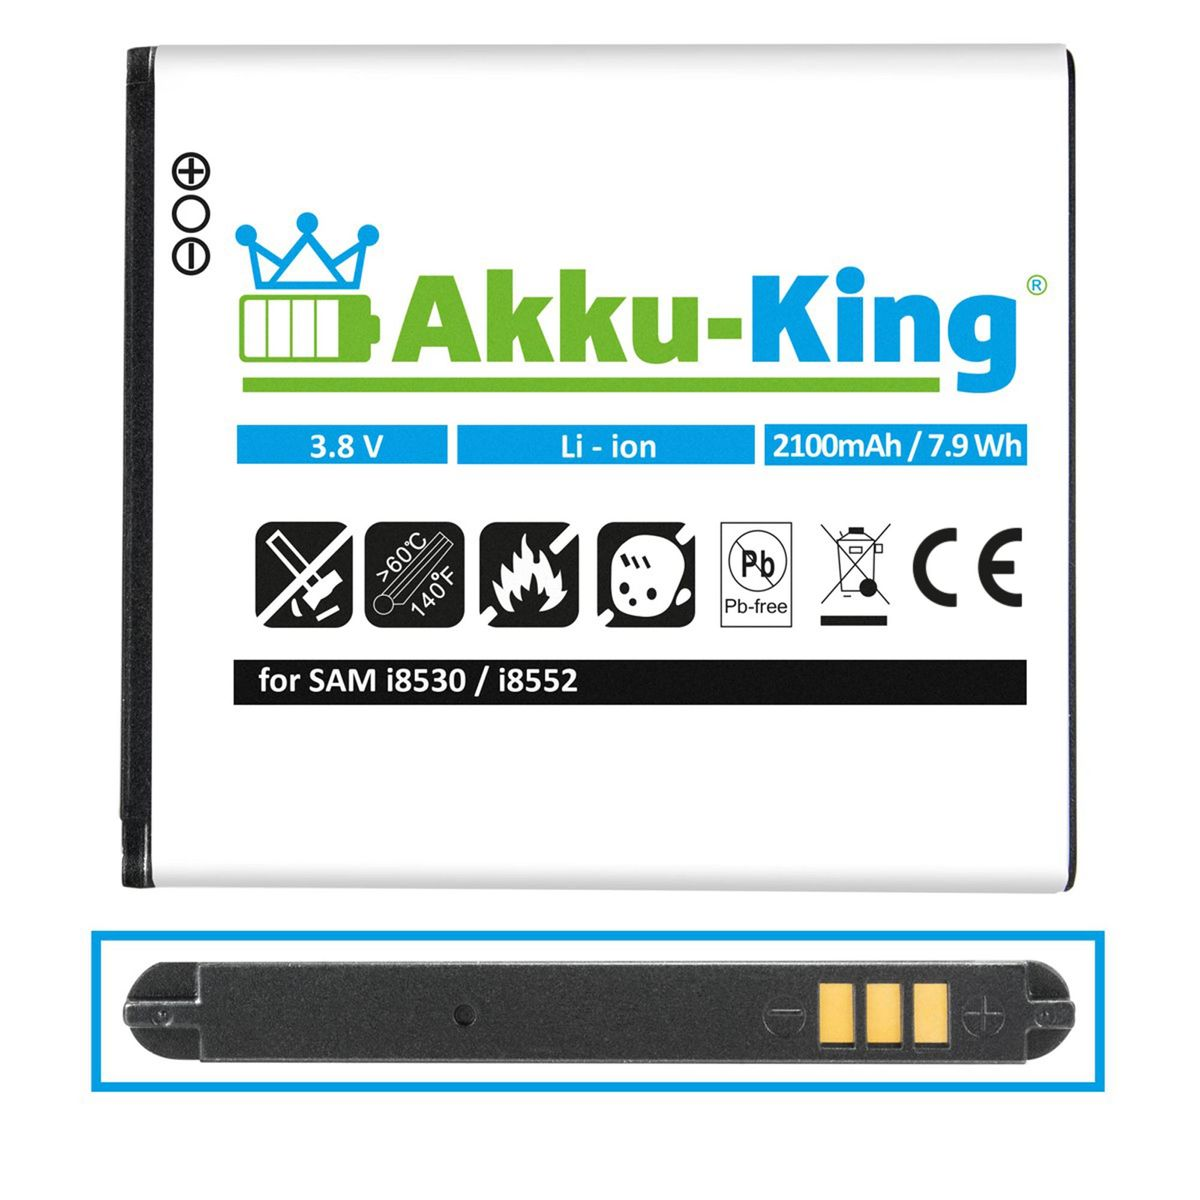 kompatibel Volt, EB585157LU mit Akku 2100mAh Samsung AKKU-KING 3.8 Li-Ion Handy-Akku,